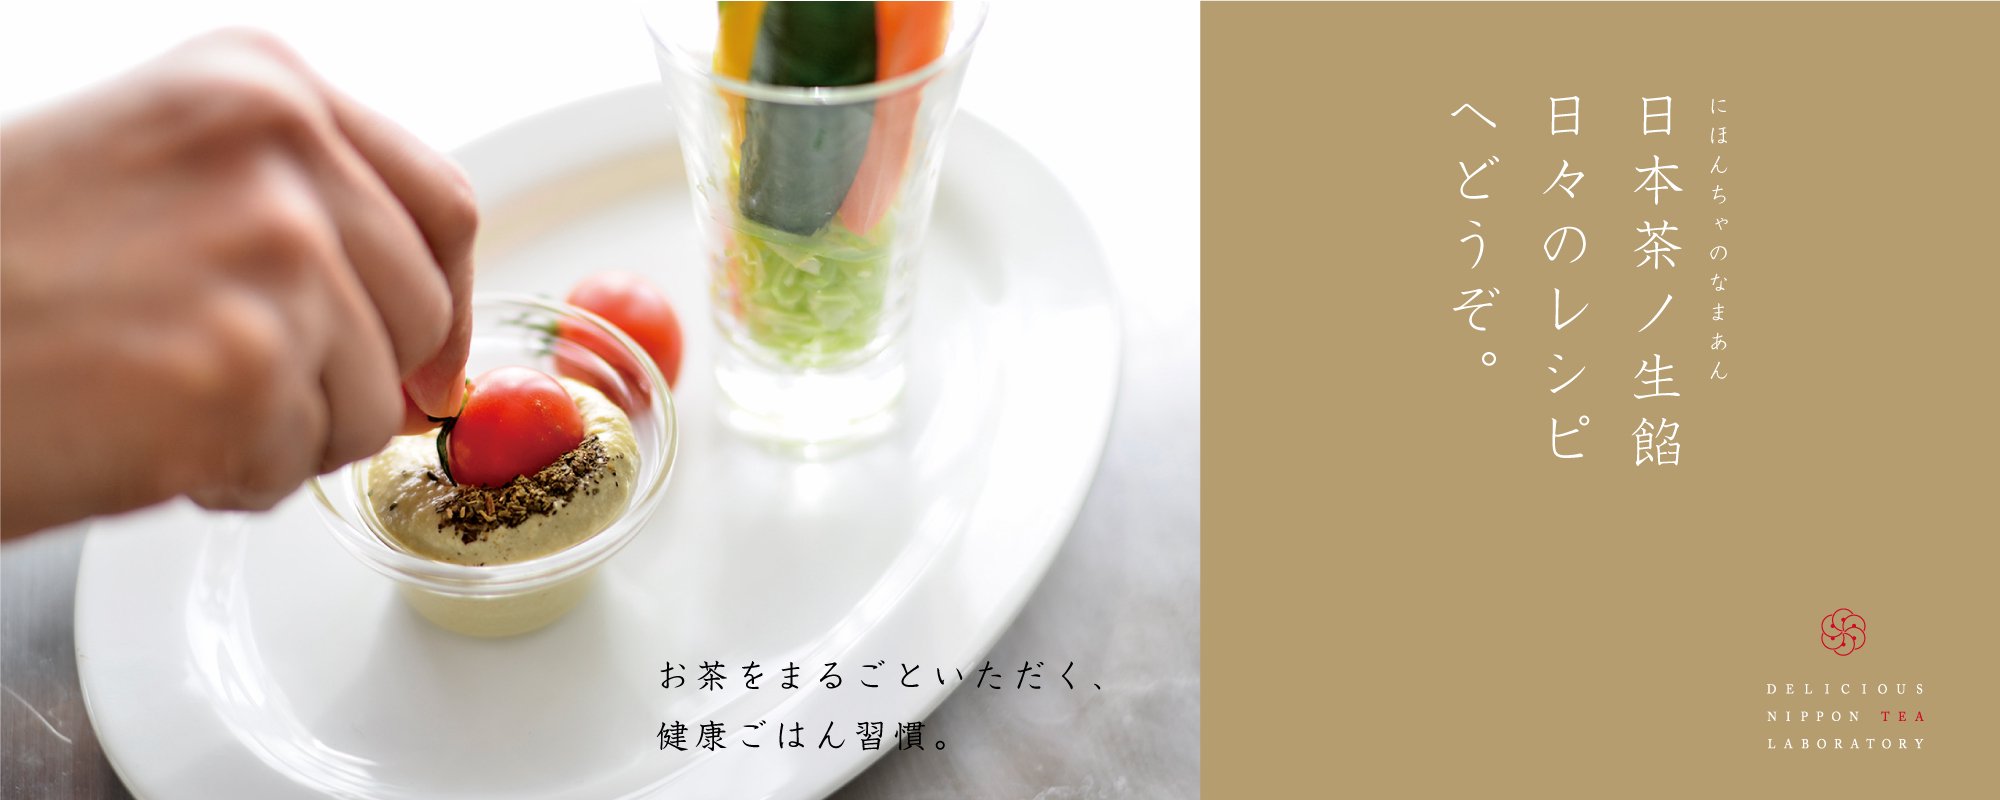 日本茶ノ生餡を使った健康ごはん「日々の健康レシピ」おいしい日本茶研究所